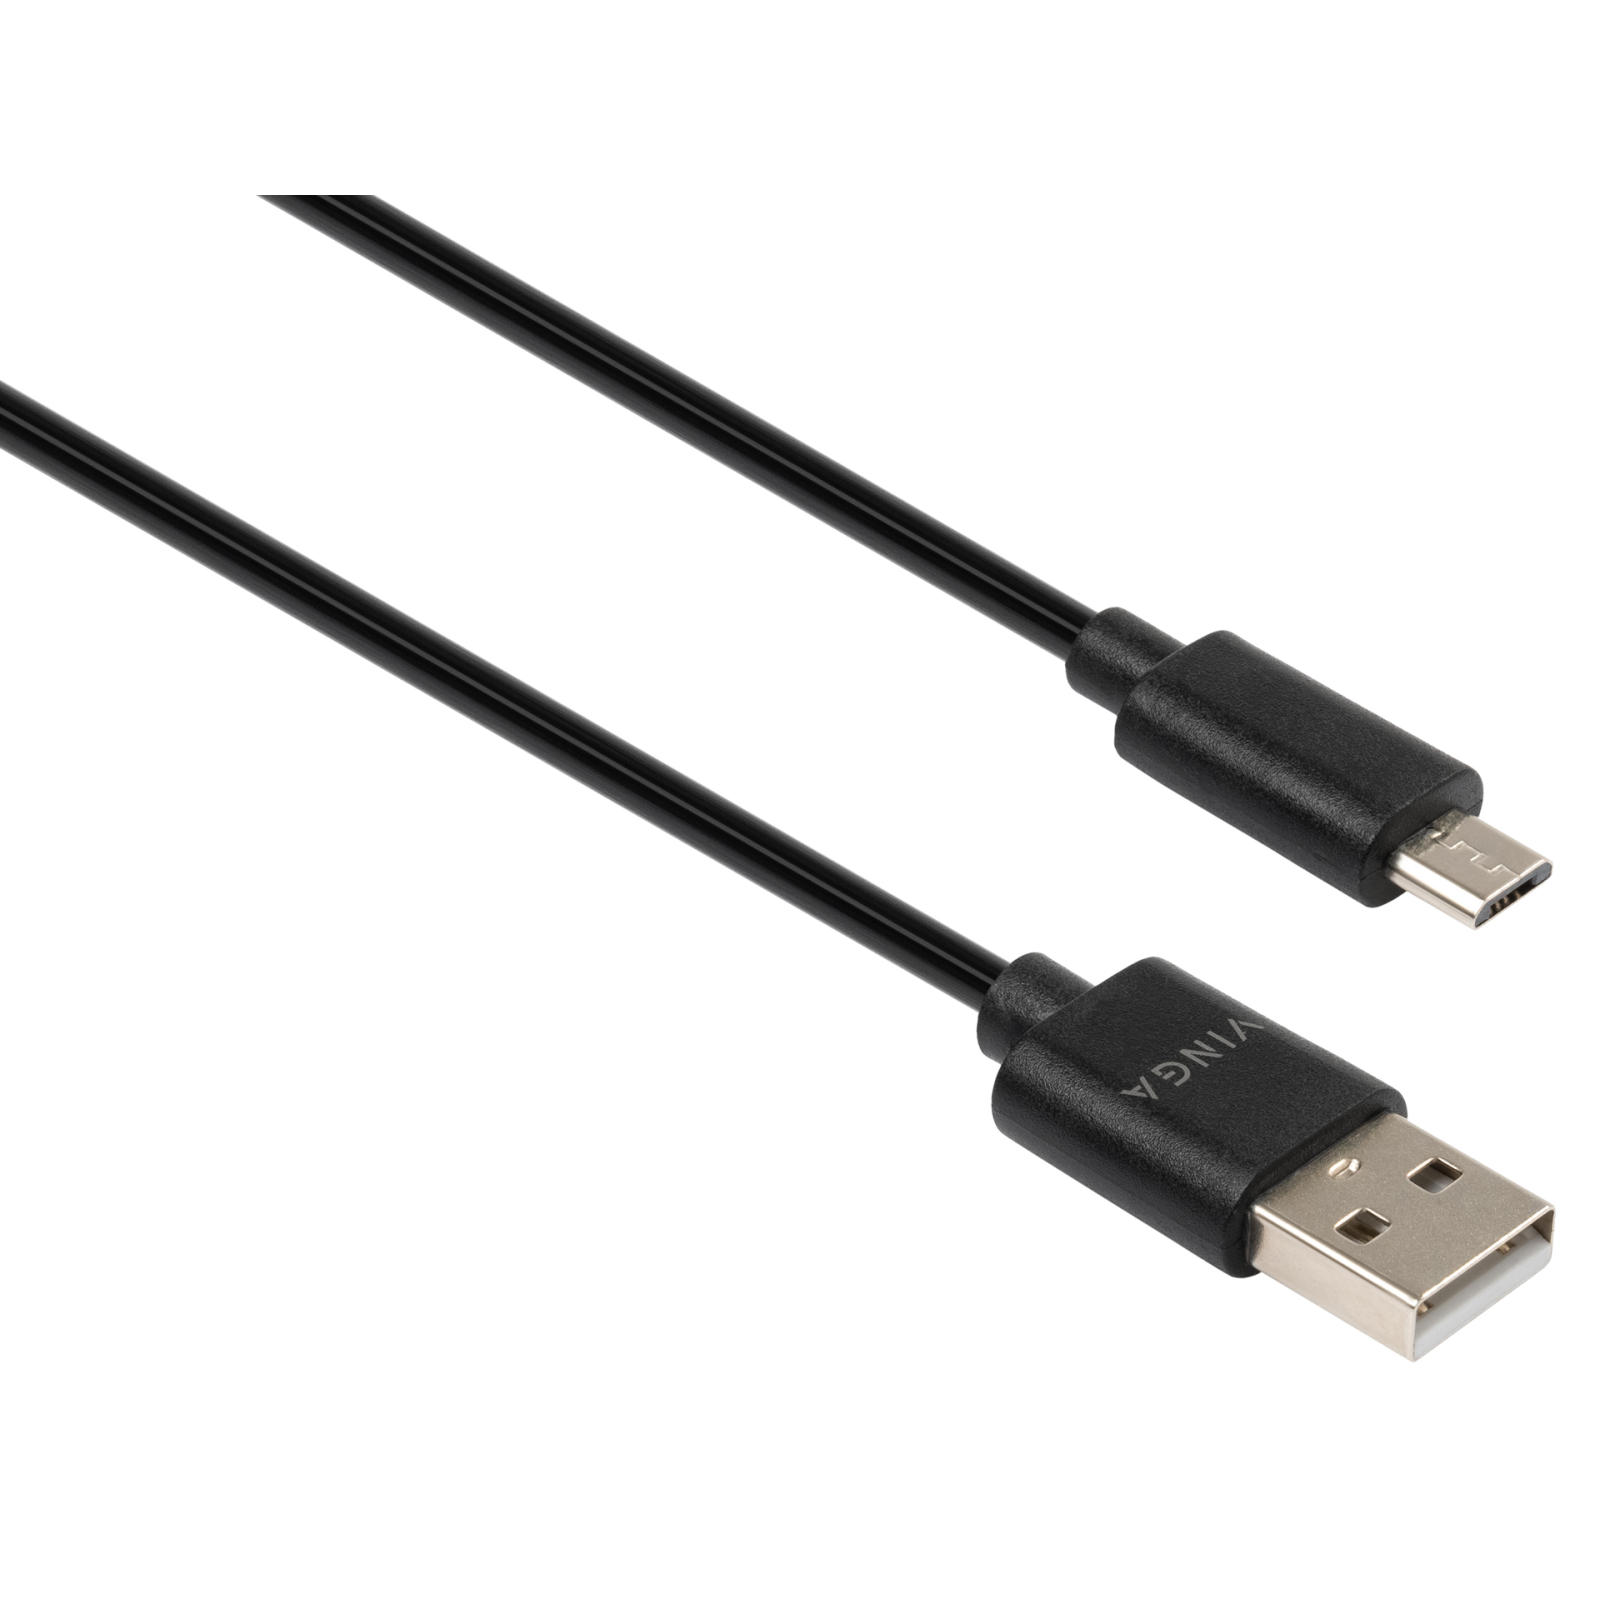 Дата кабель USB 2.0 AM to Micro 5P 1.8m Spring black Vinga (VCPDCMS1.8BK) зображення 2